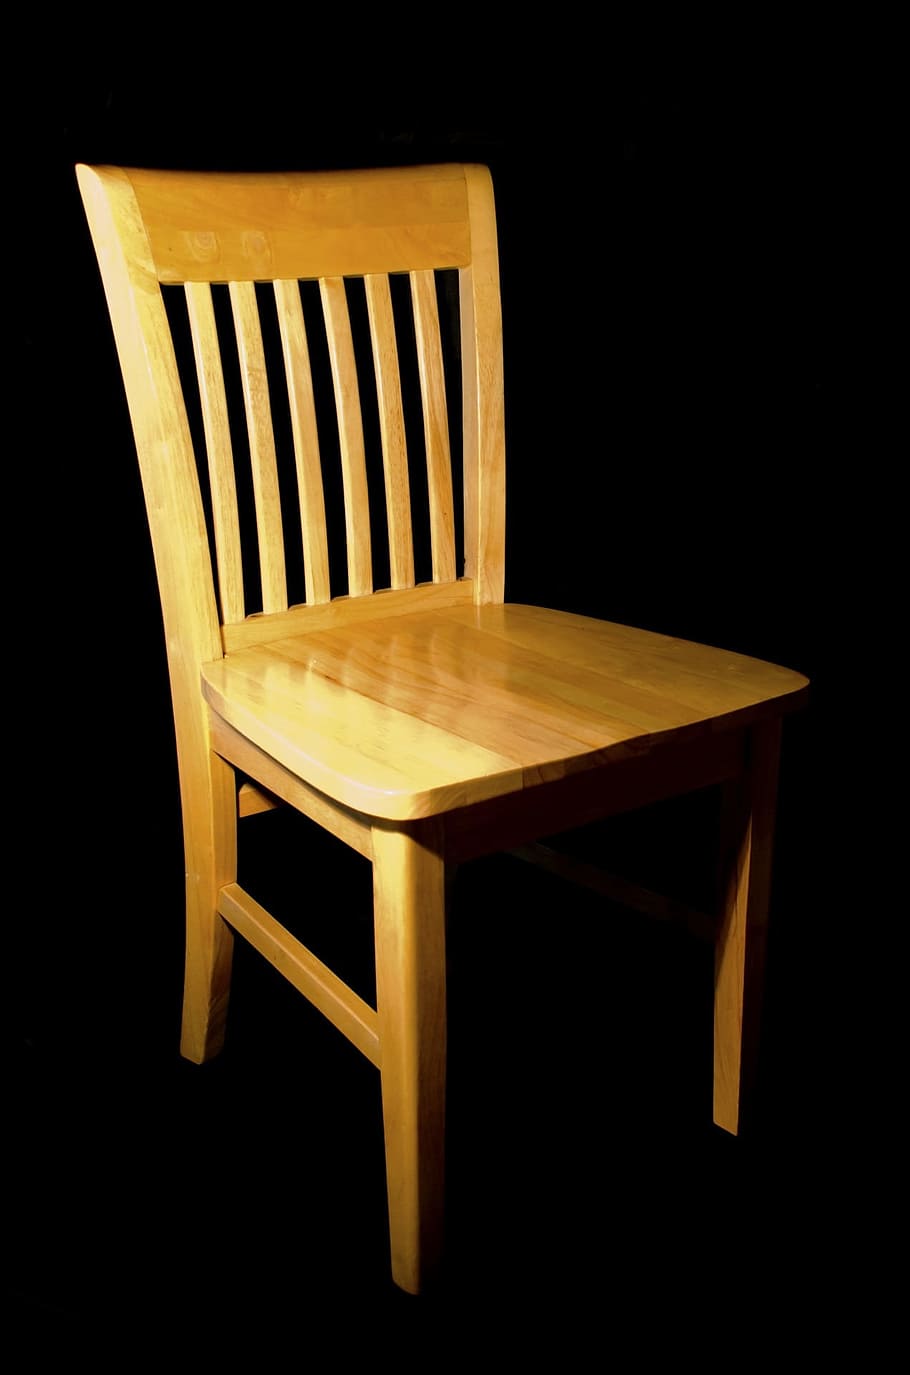 Màu nâu trầm của chiếc ghế gỗ kết hợp với nền đen của cây thông tạo nên một bức tranh tuyệt đẹp. Sự hòa quyện nhẹ nhàng giữa hai gam màu này tạo cho không gian sống của bạn một vẻ đẹp sang trọng và thanh lịch. Hãy cùng chiêm ngưỡng chiếc ghế gỗ màu nâu đầy thu hút trên nền đen đặc biệt này.